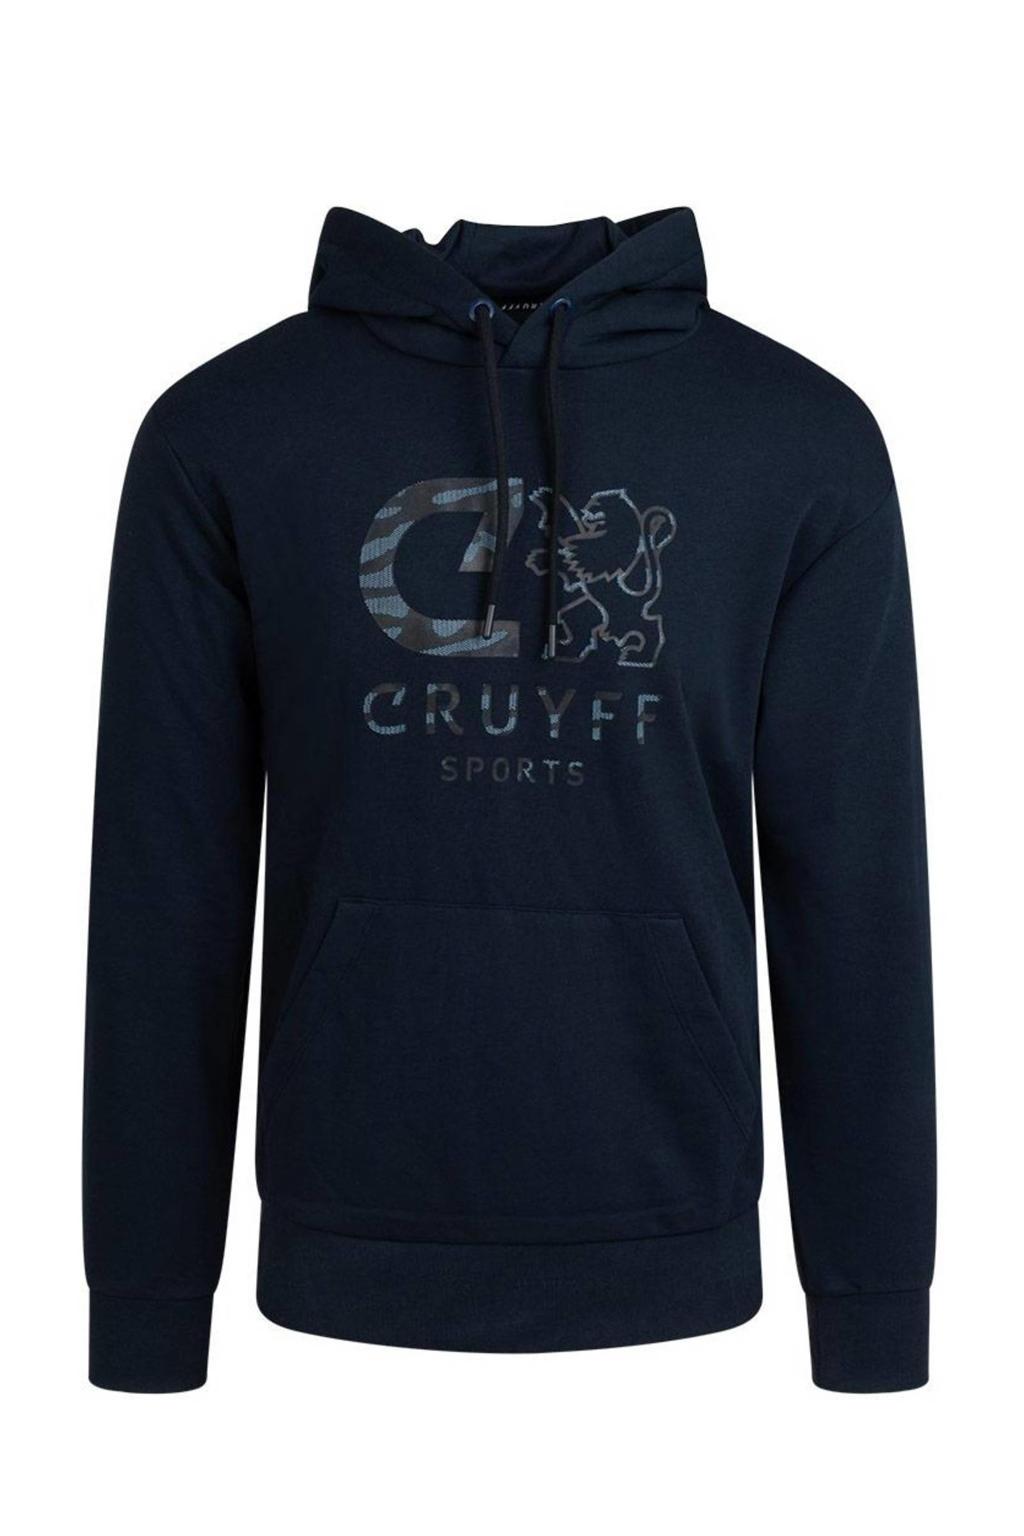 Donkerblauwe jongens en meisjes Cruyff hoodie van katoen met logo dessin, lange mouwen en capuchon